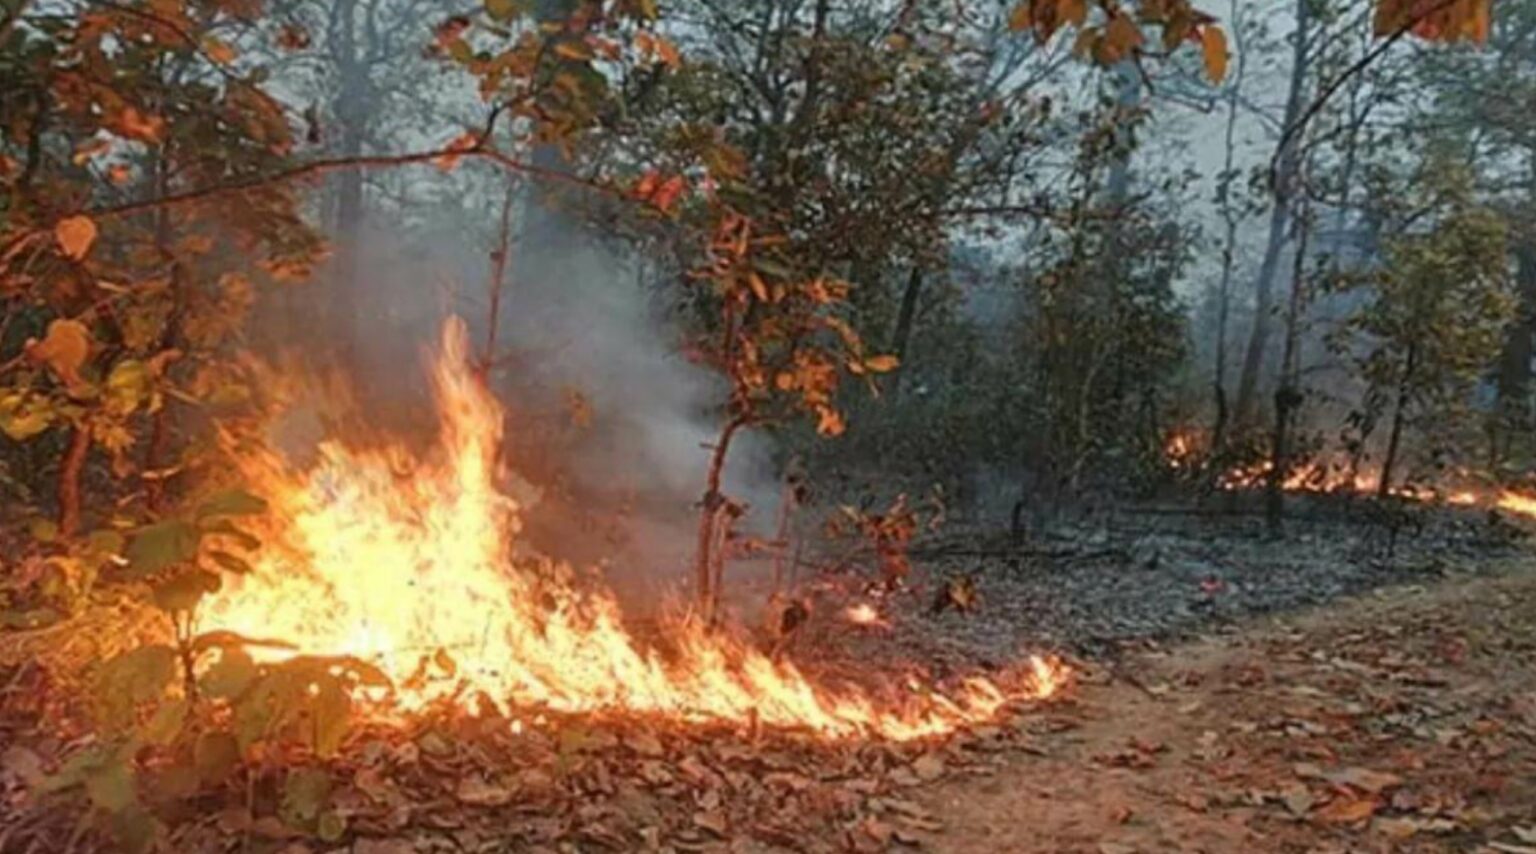 प्रदेश में कड़ाके की सर्दी पड़ने के दौरान भी क्यों सुलग रहे जंगल?भारतीय वन सर्वेक्षण से विभाग को प्रतिदिन मिले 10 से 12 फायर अलर्ट